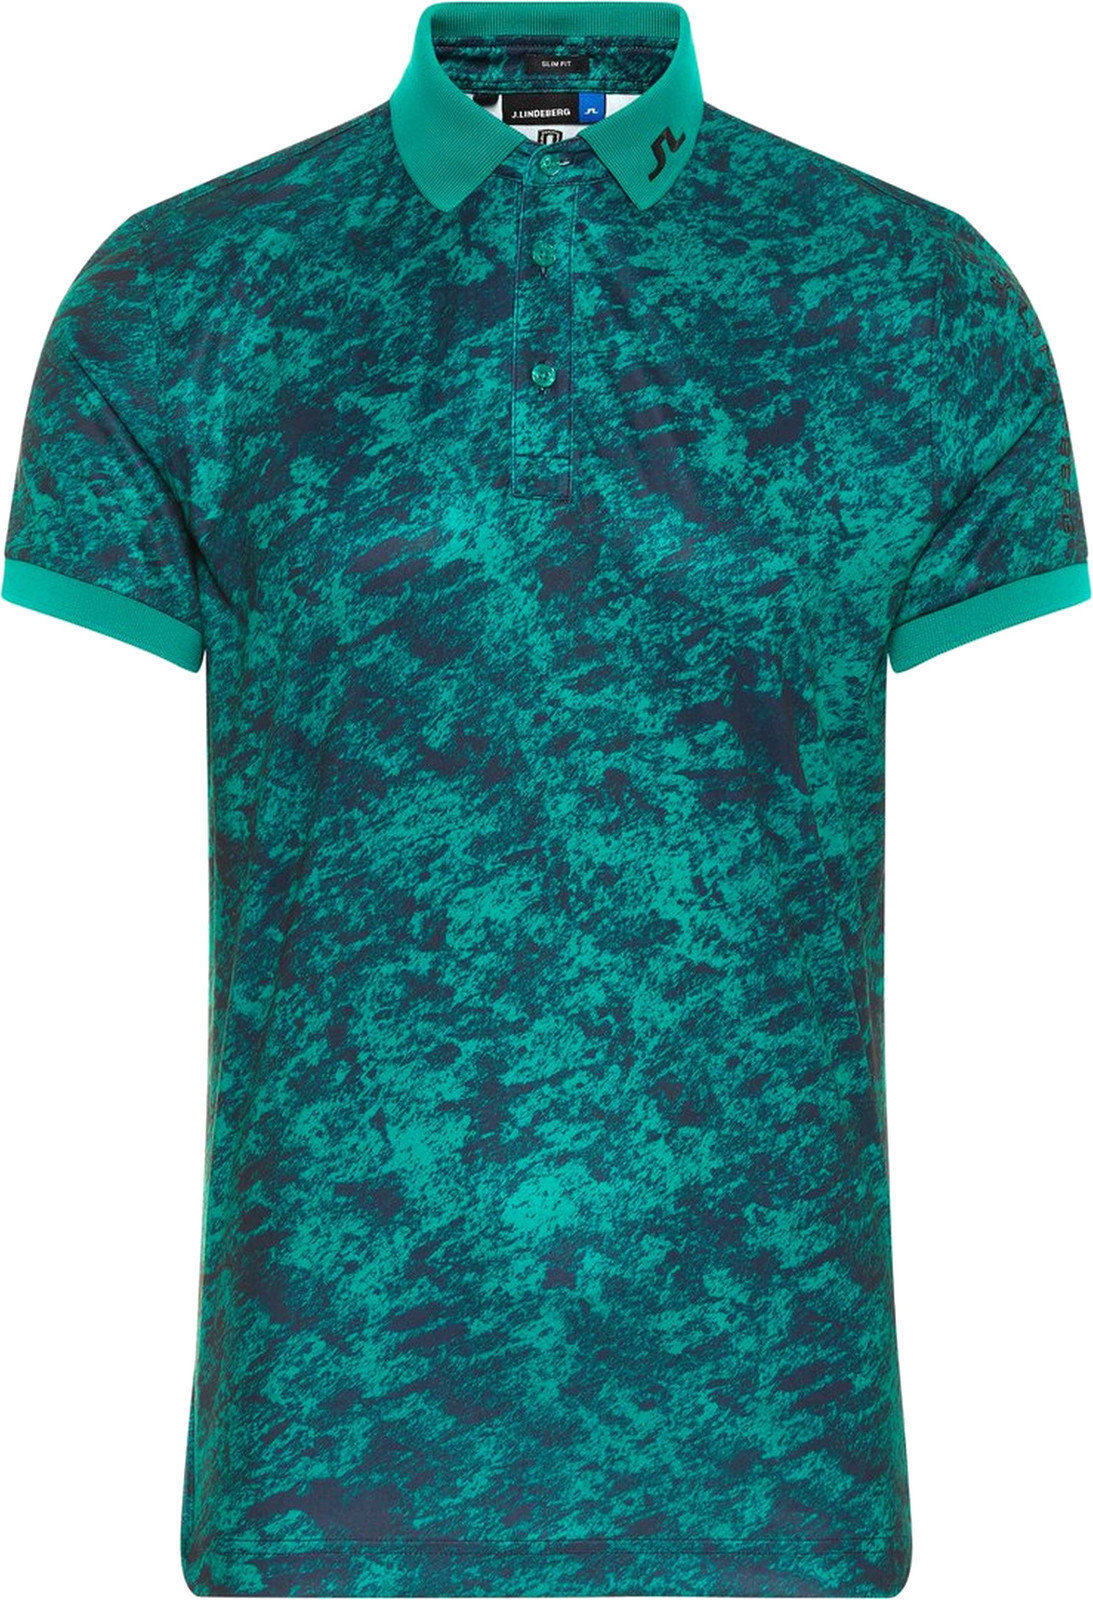 Camiseta polo J.Lindeberg Tour Tech Slim Mens Polo Shirt Green/Ocean Camou XL